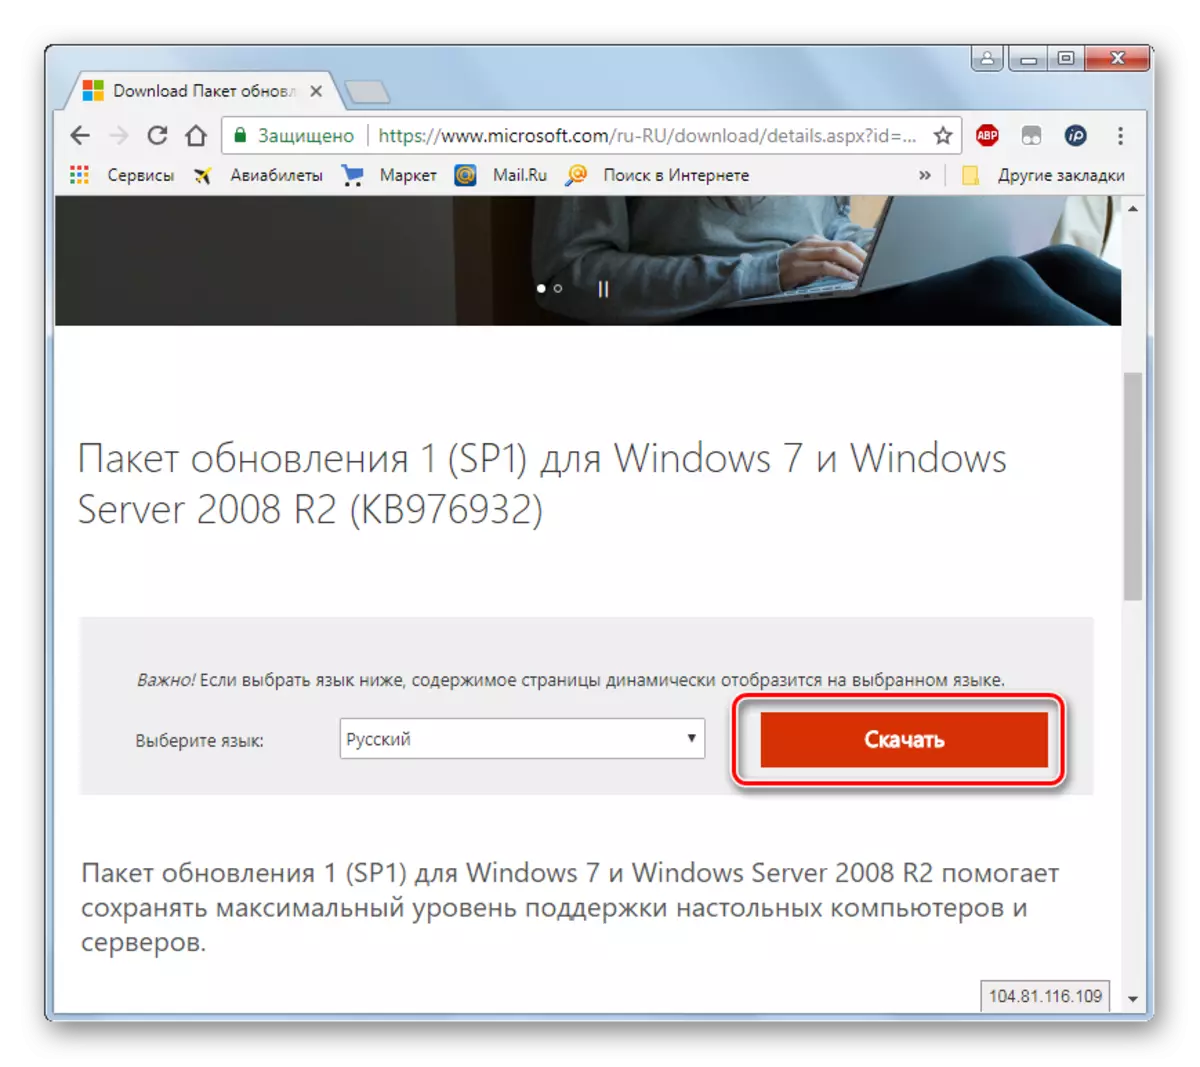 Shkoni te shkarkoni Shërbimin Pack 1 në faqen zyrtare të Microsoft përmes shfletuesit në Windows 7